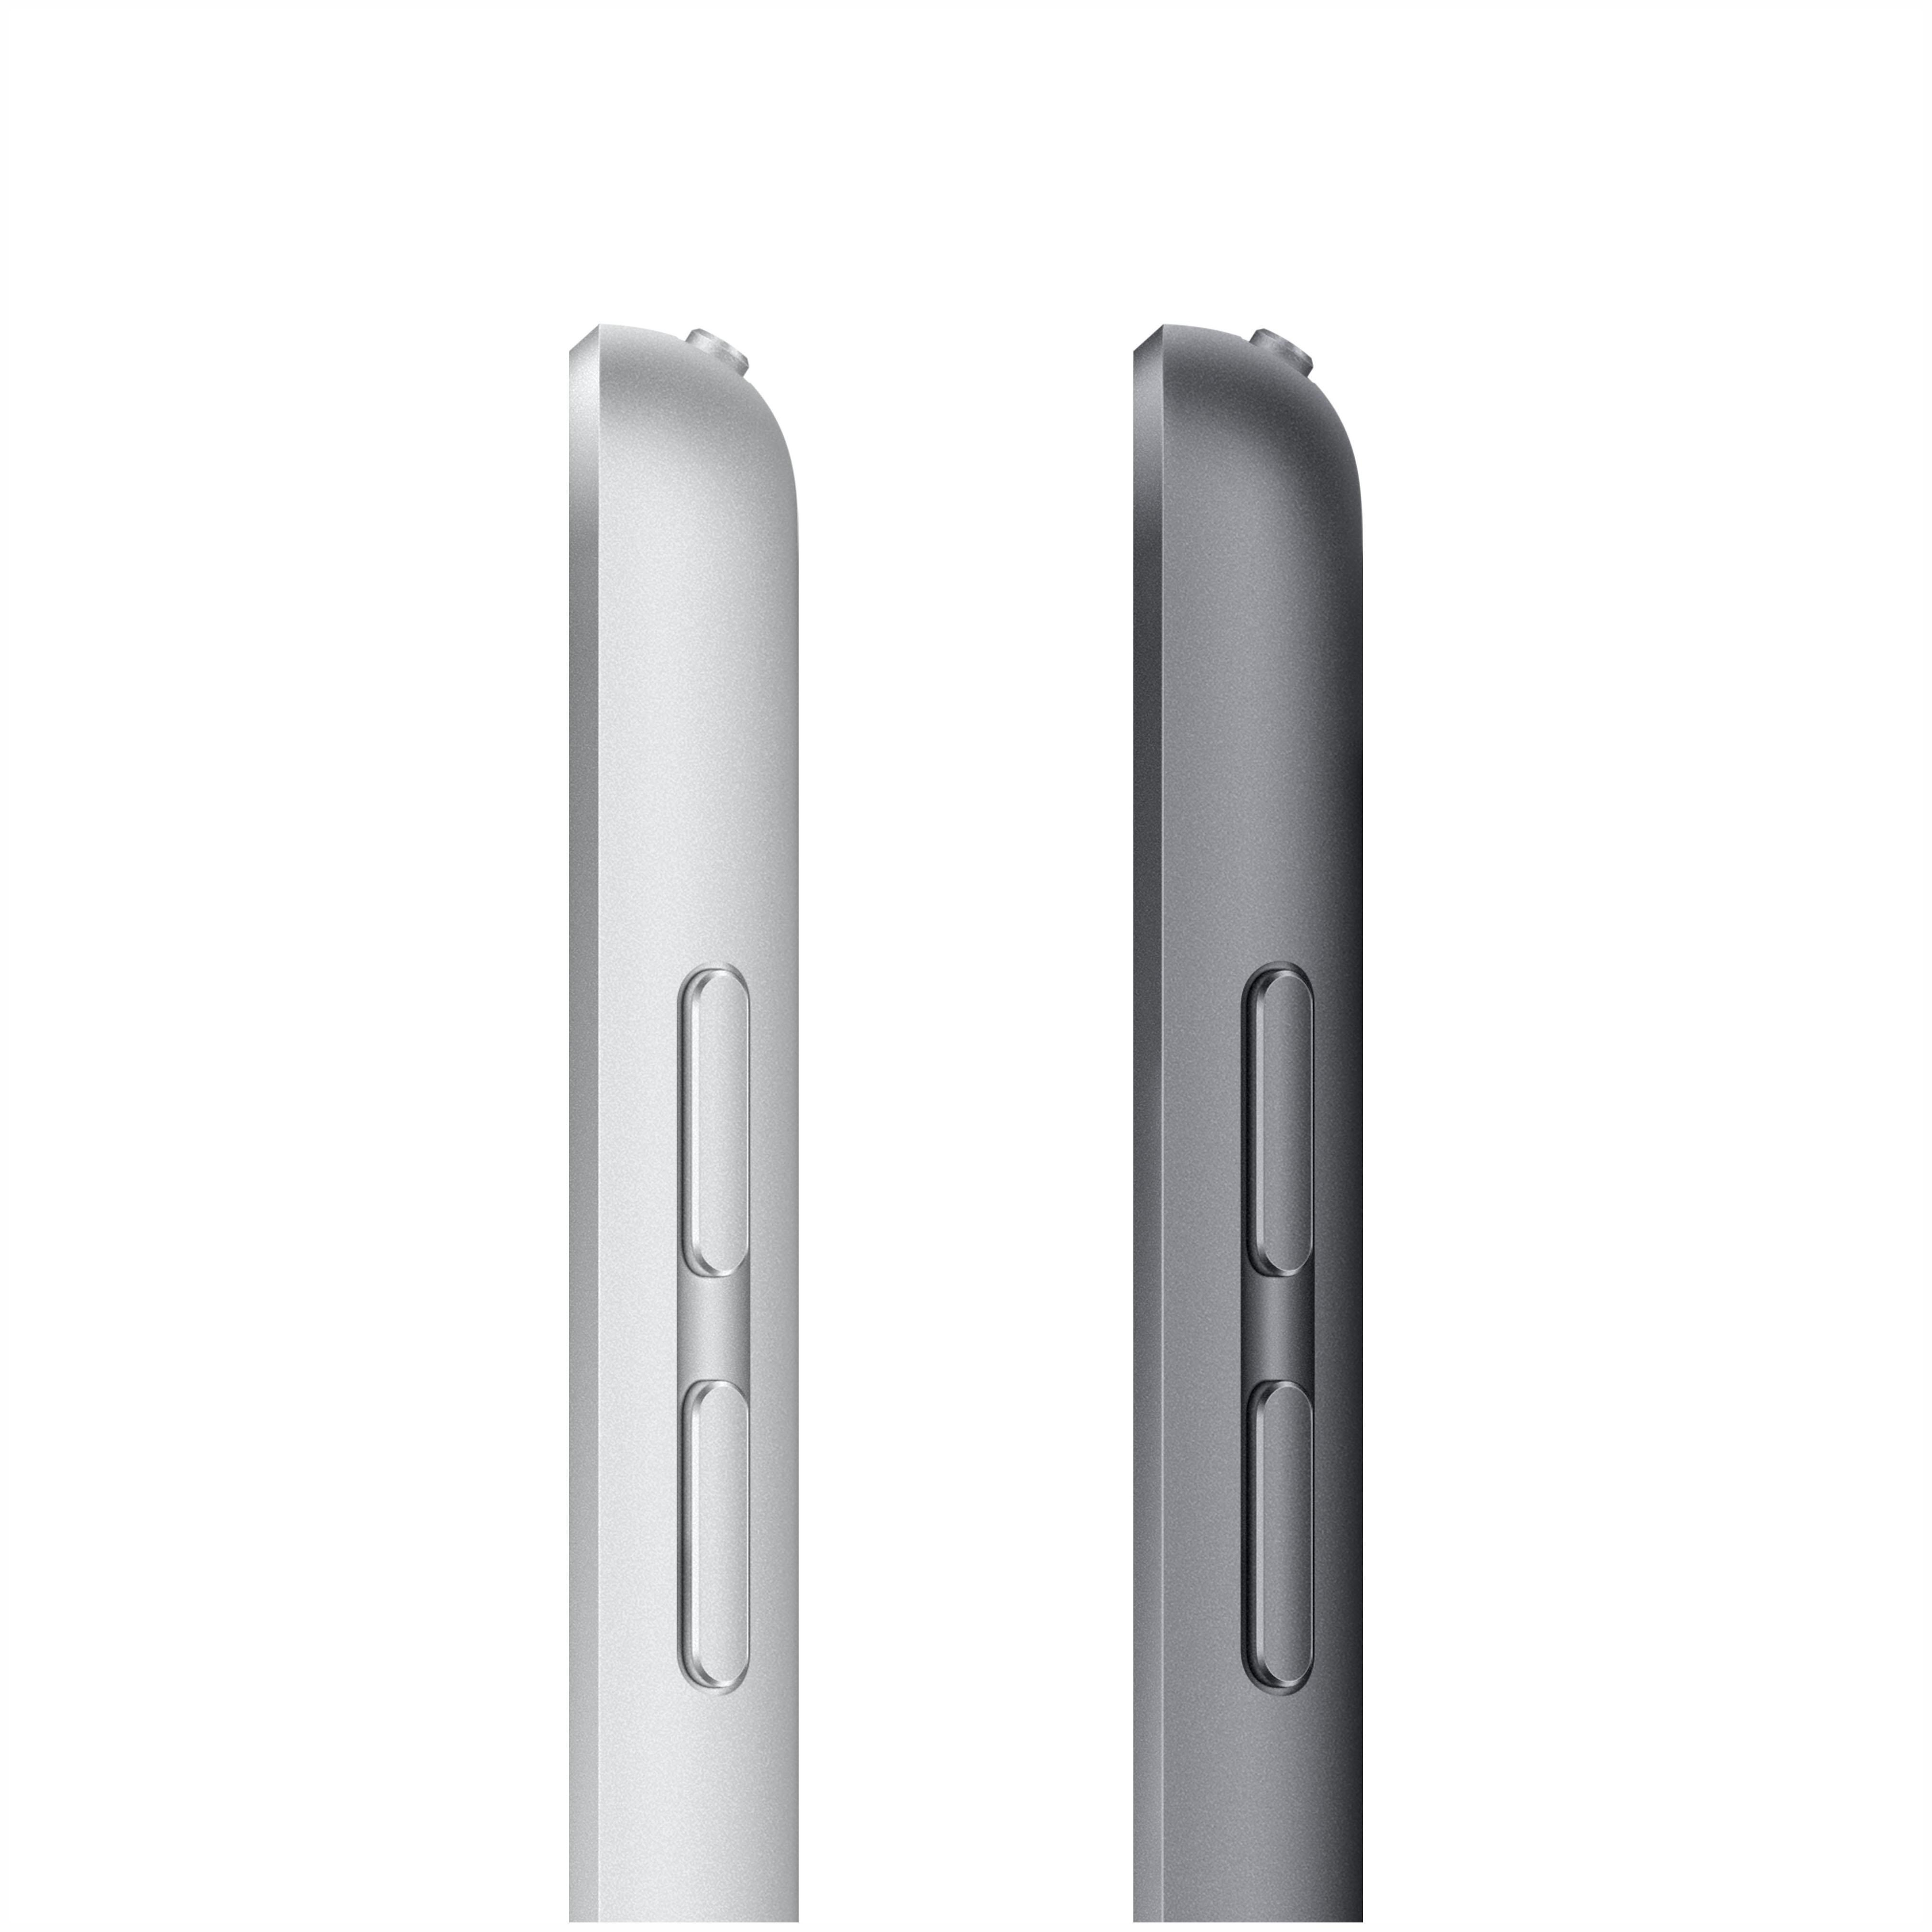 APPLE iPad Wi-Fi (9. 10,2 2021), GB, 64 Generation Silber Tablet, Zoll